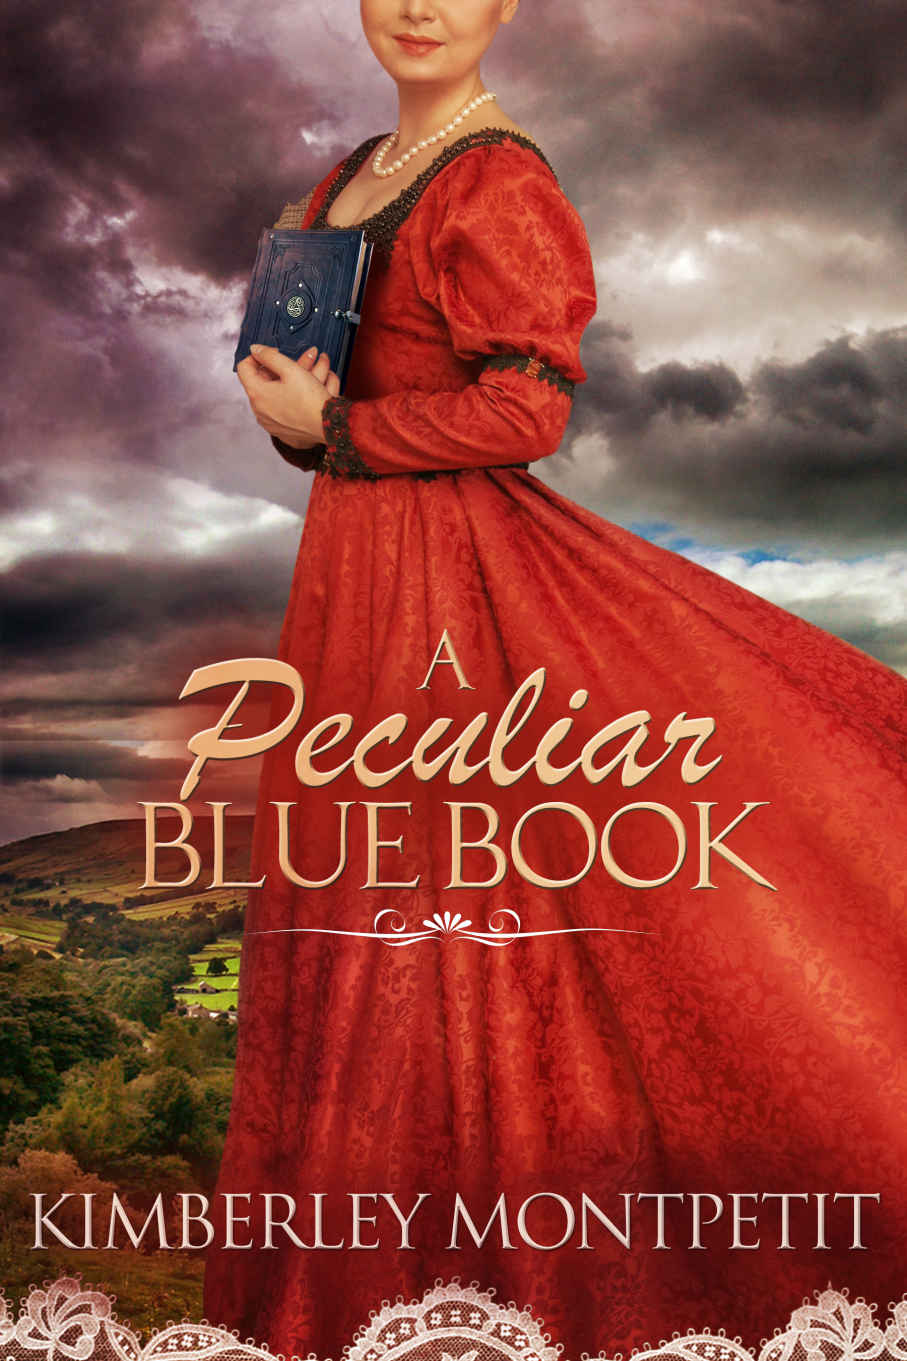 A Peculiar Blue Book